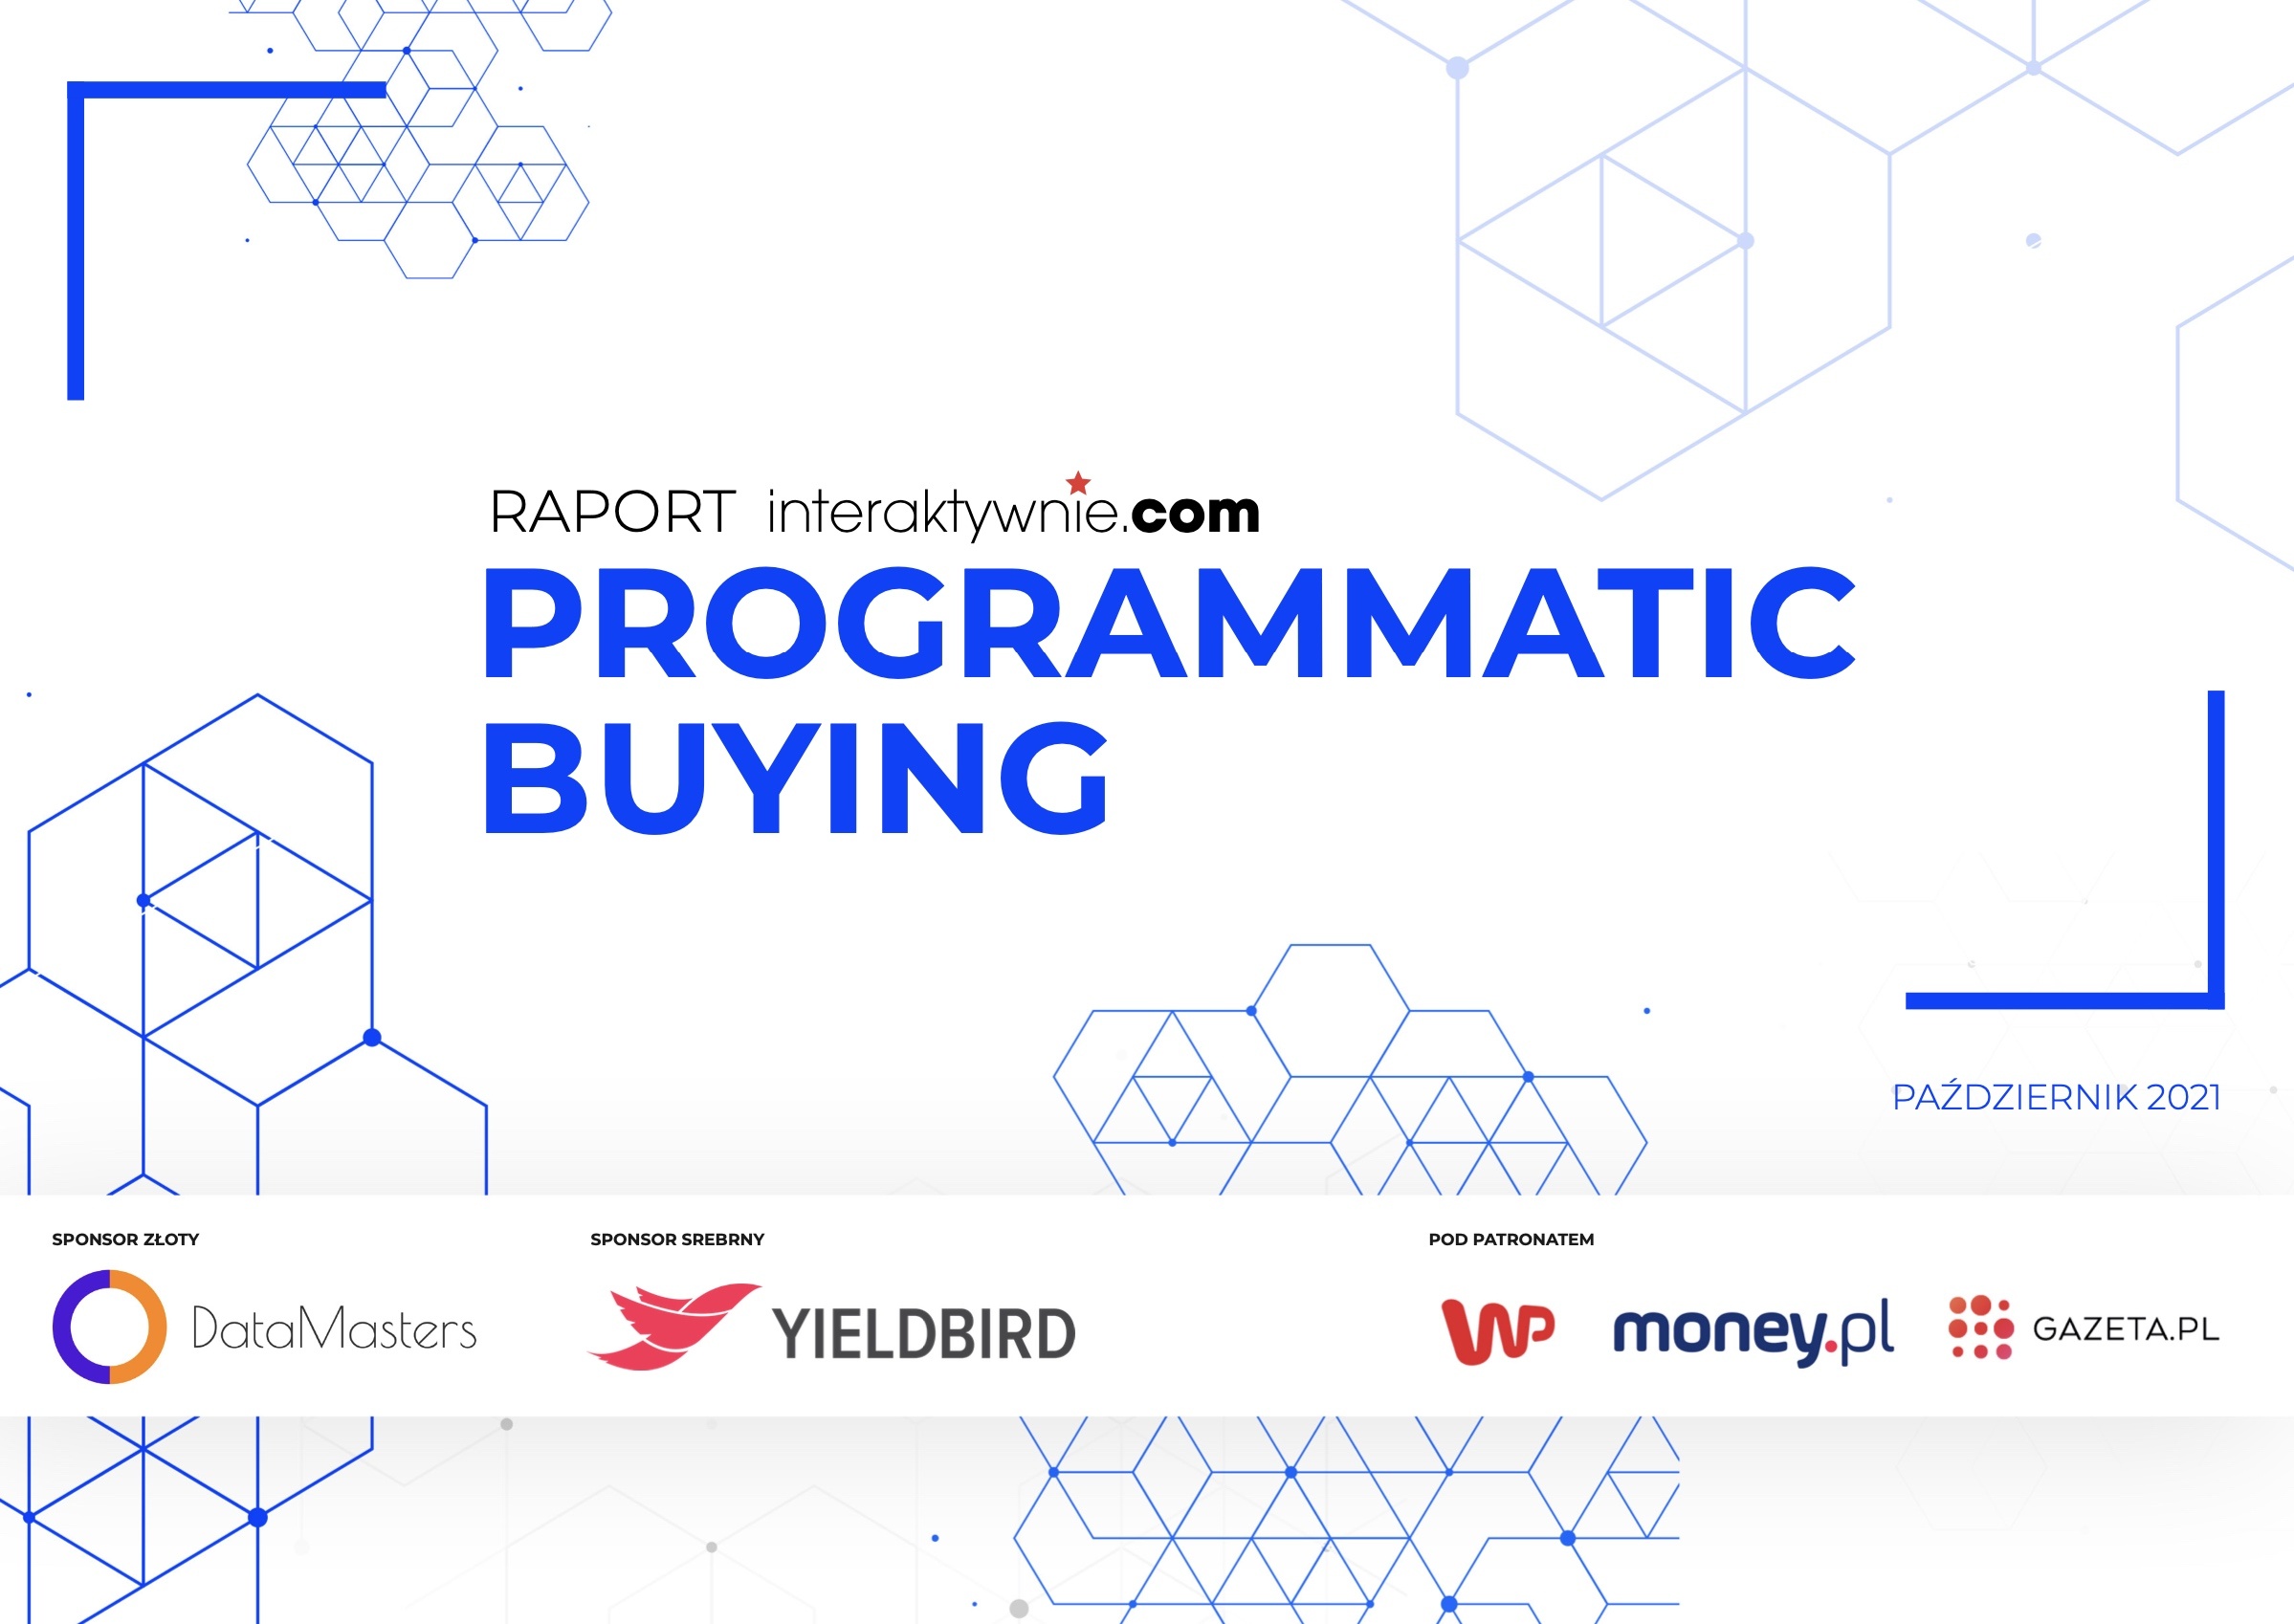 Programmatic buying